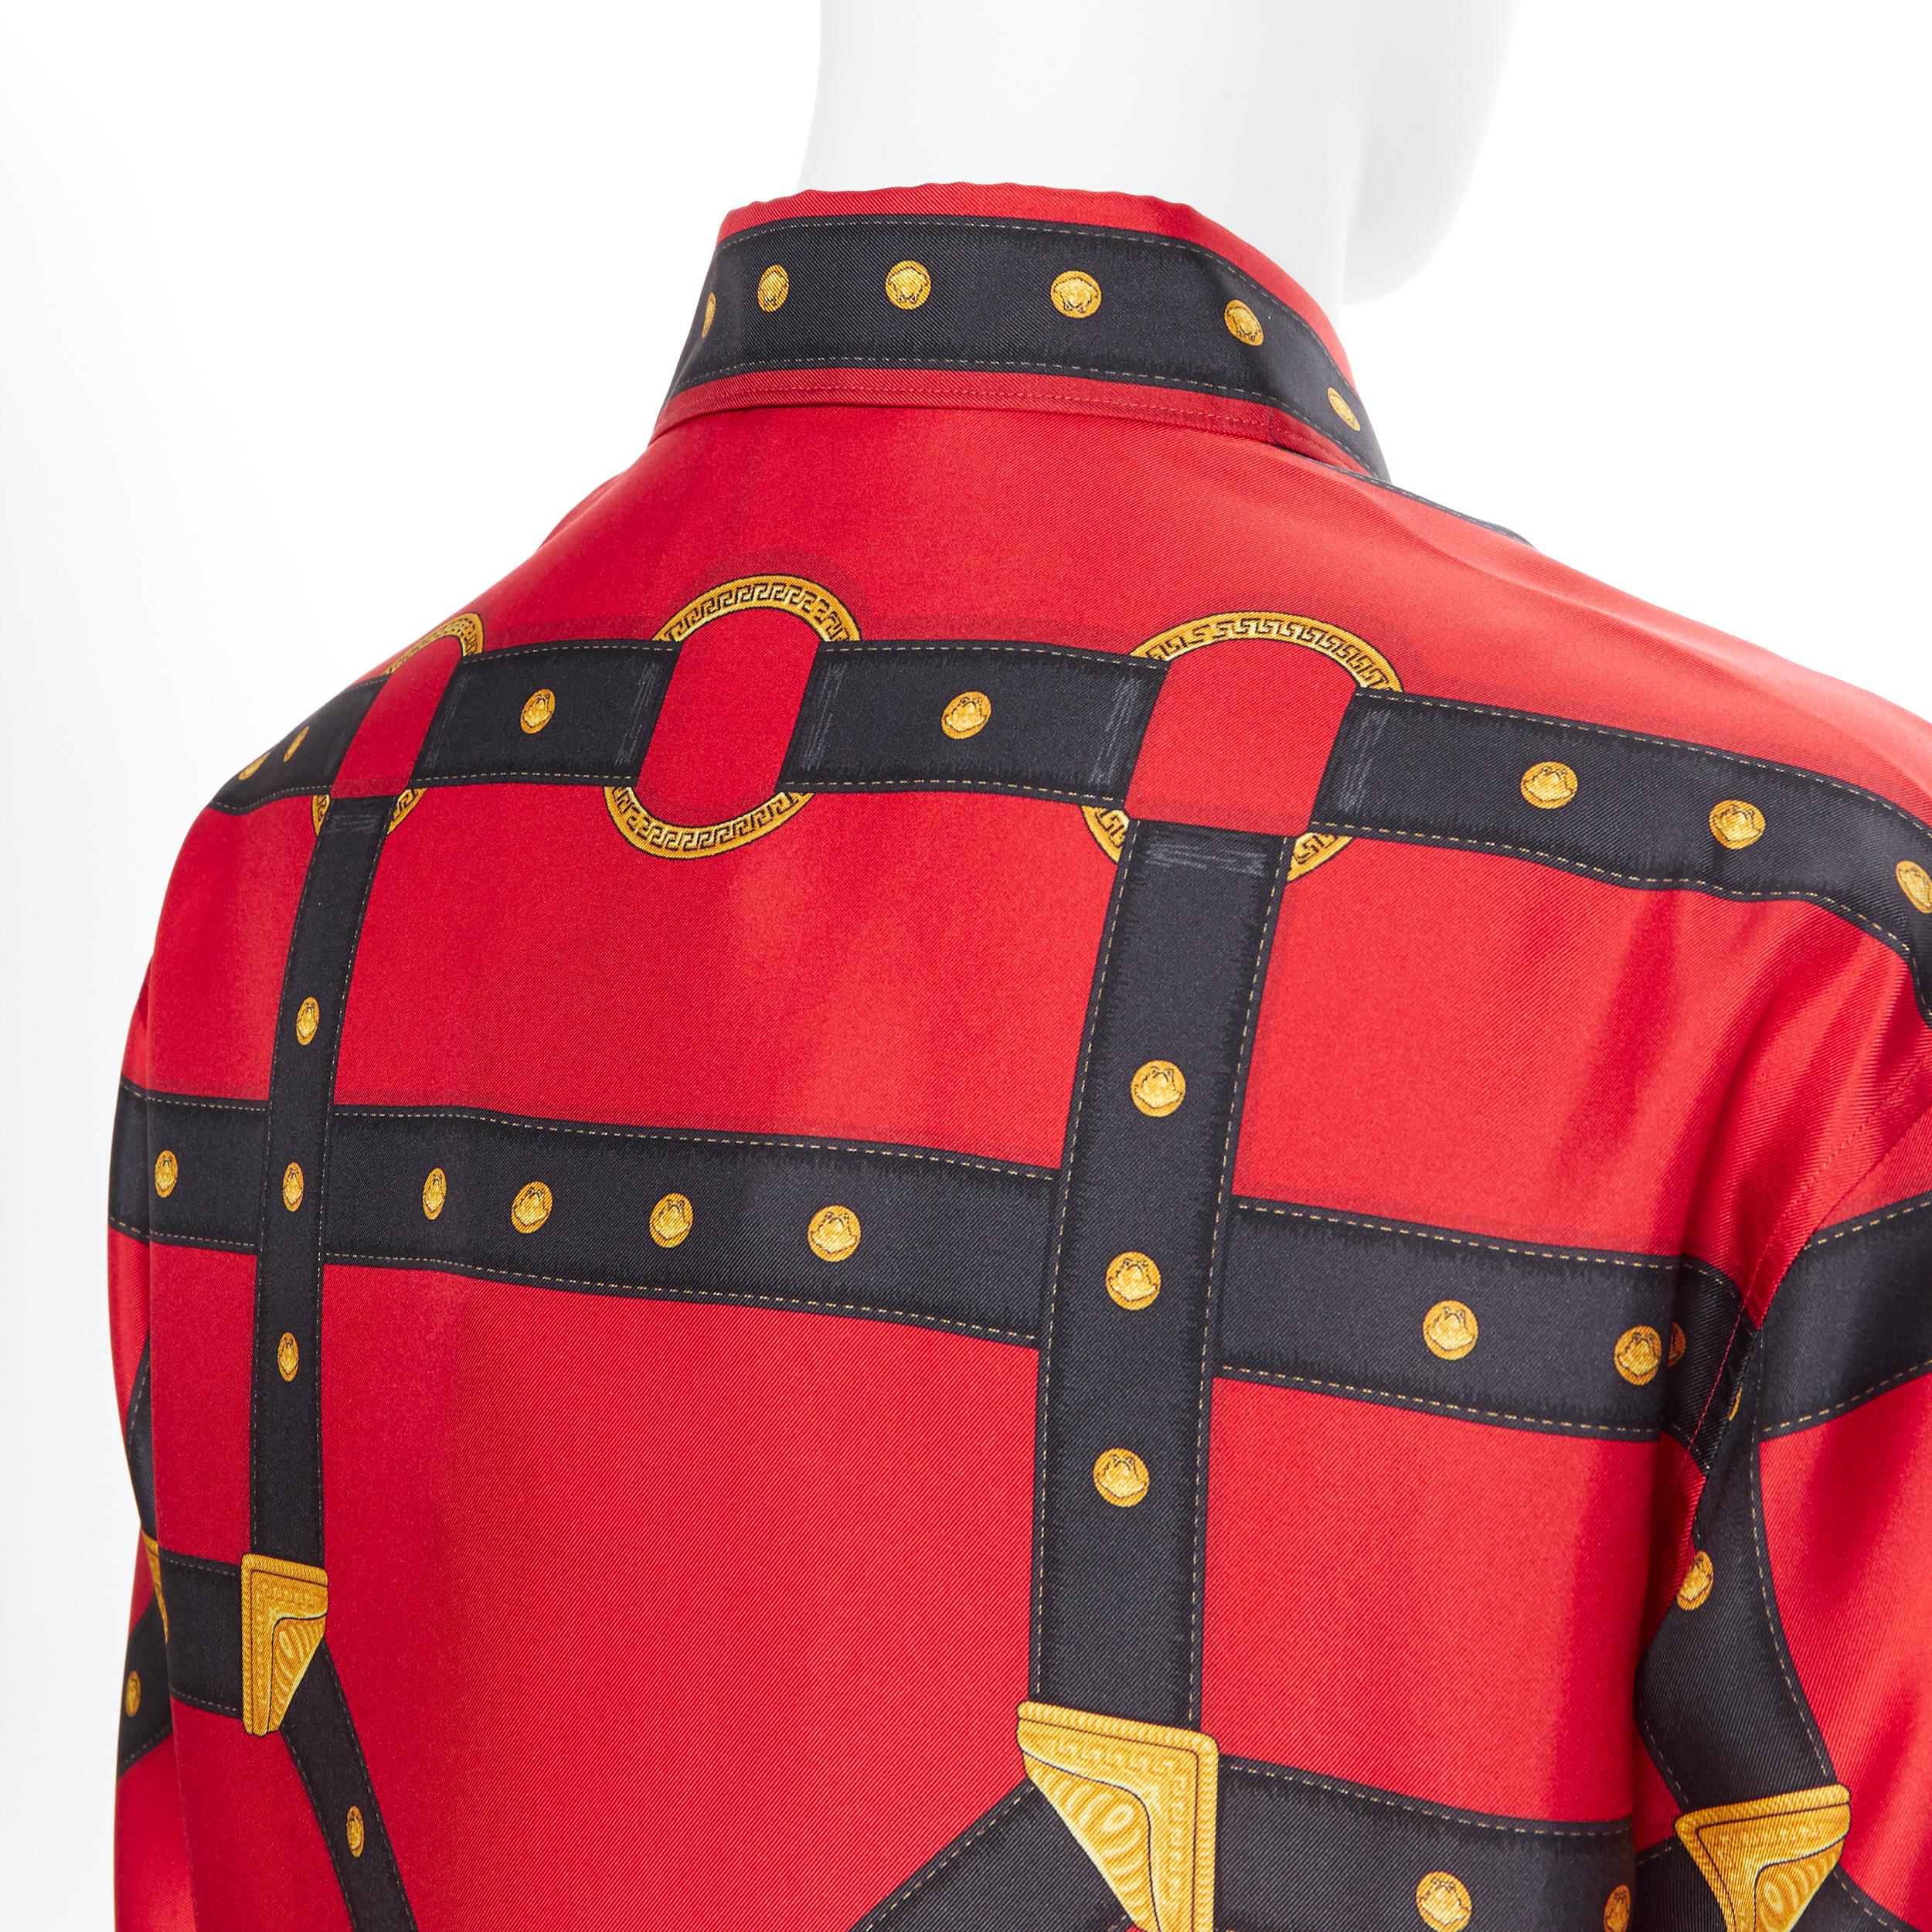 new VERSACE 2019 Runway 100% silk red black gold Medusa harness shirt EU40 L 1